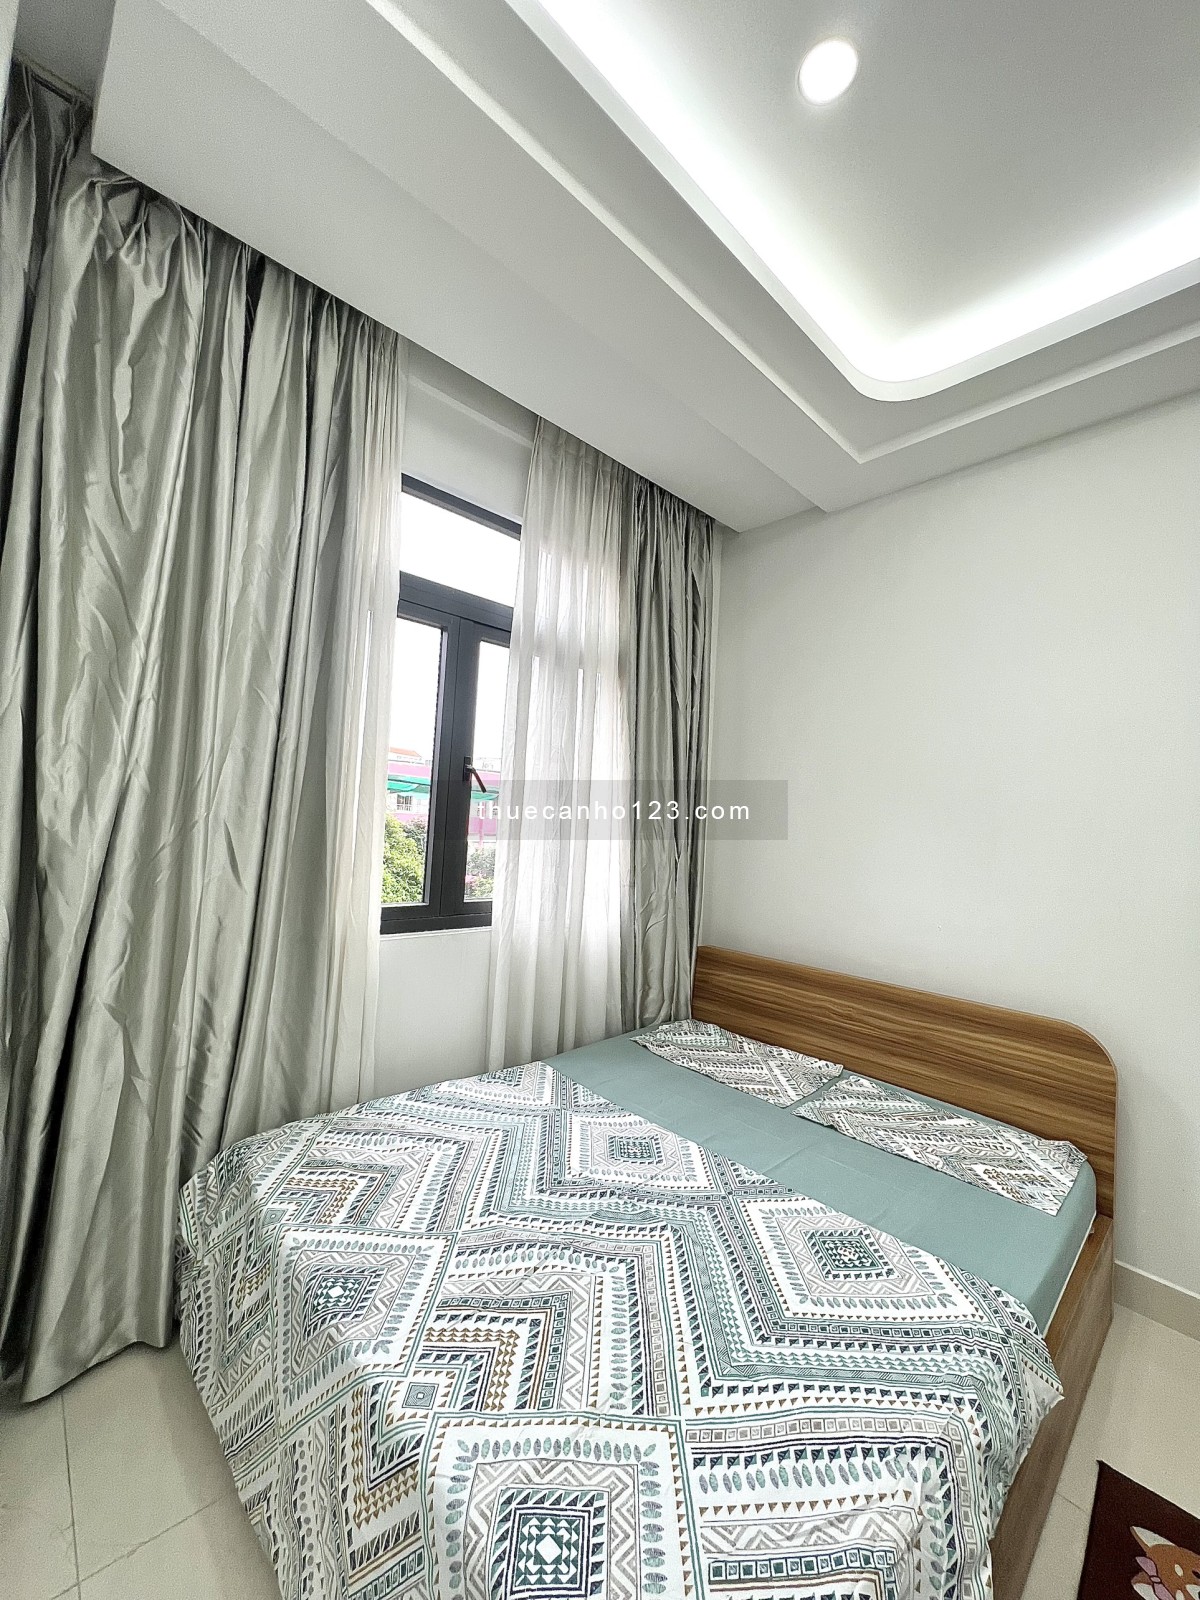 Cho thuê căn hộ 1 phòng ngủ balcony cao cấp ngay trung tâm Phú Nhuận